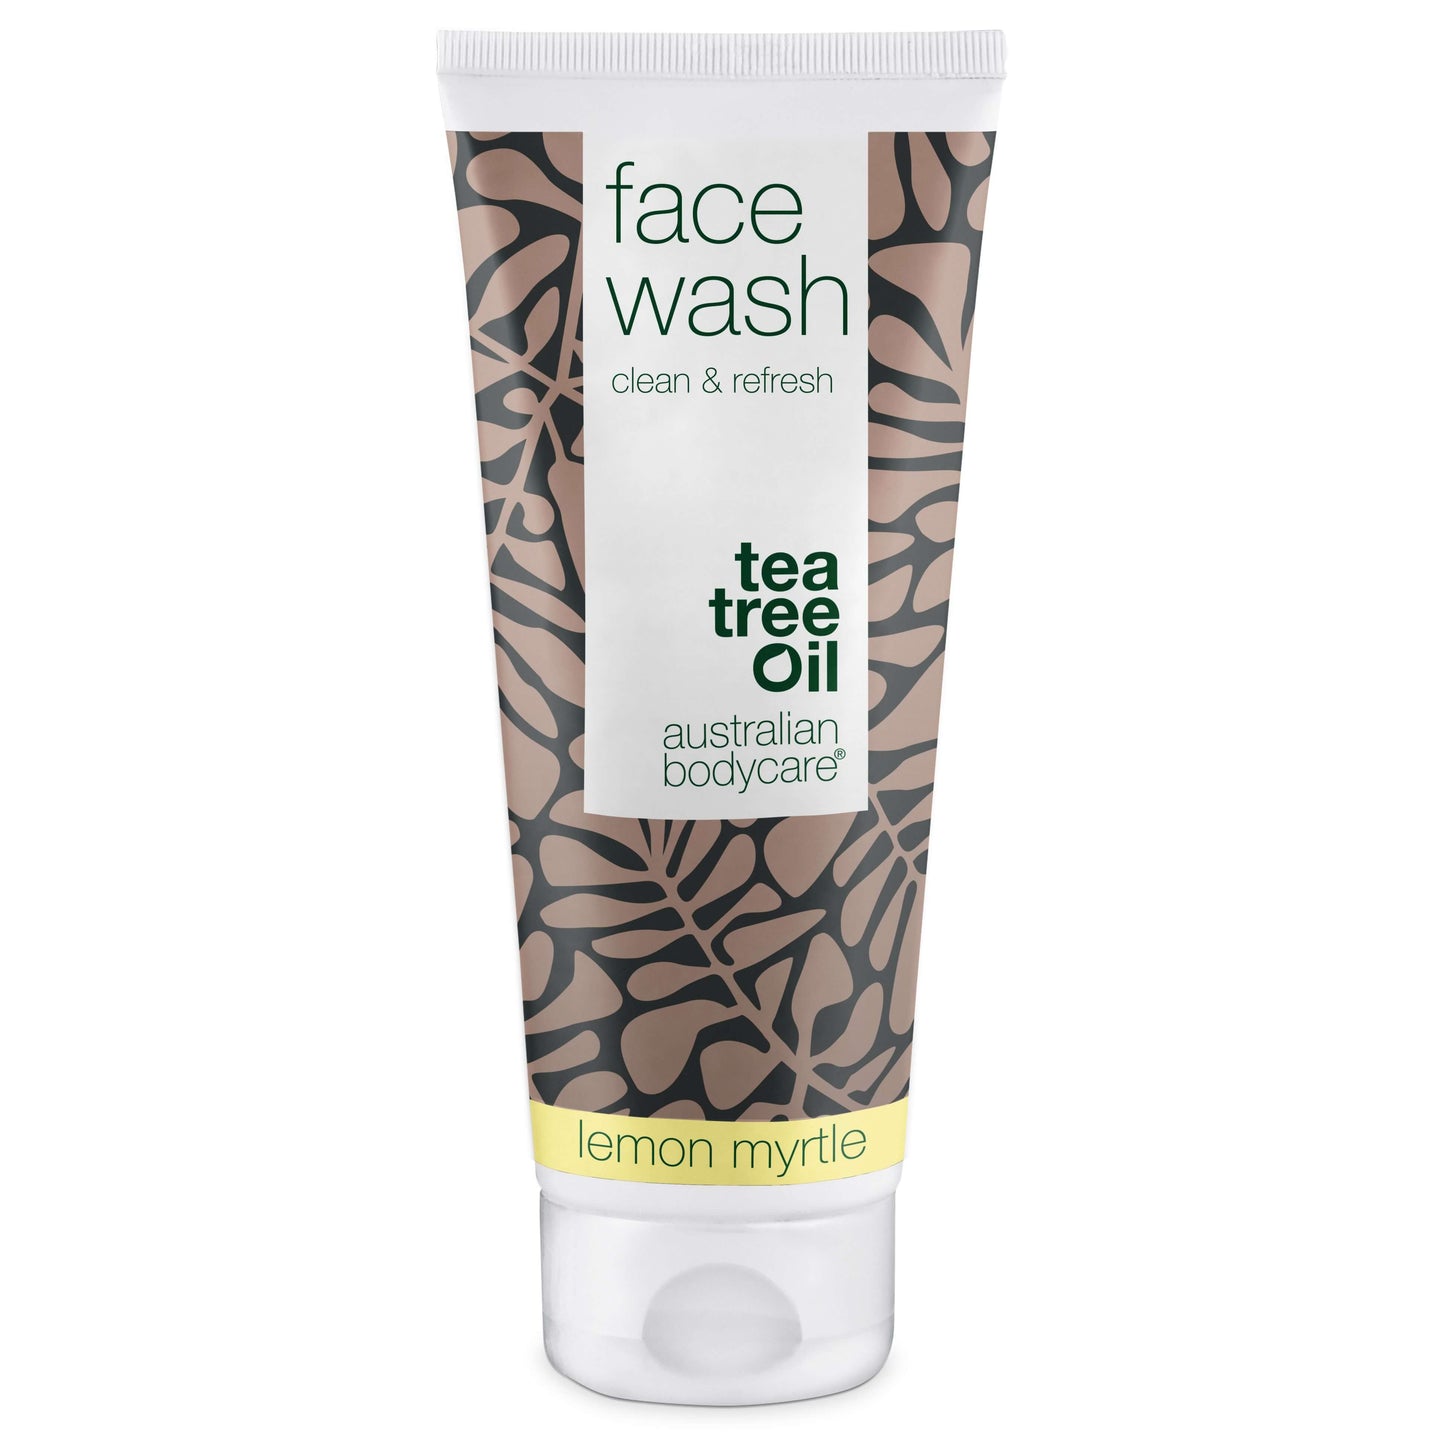 Nettoyant visage à l'huile de tea tree pour les boutons et peaux impures - Nettoyage quotidien du visage pour les peaux grasses et impures pour les hommes et les femmes.